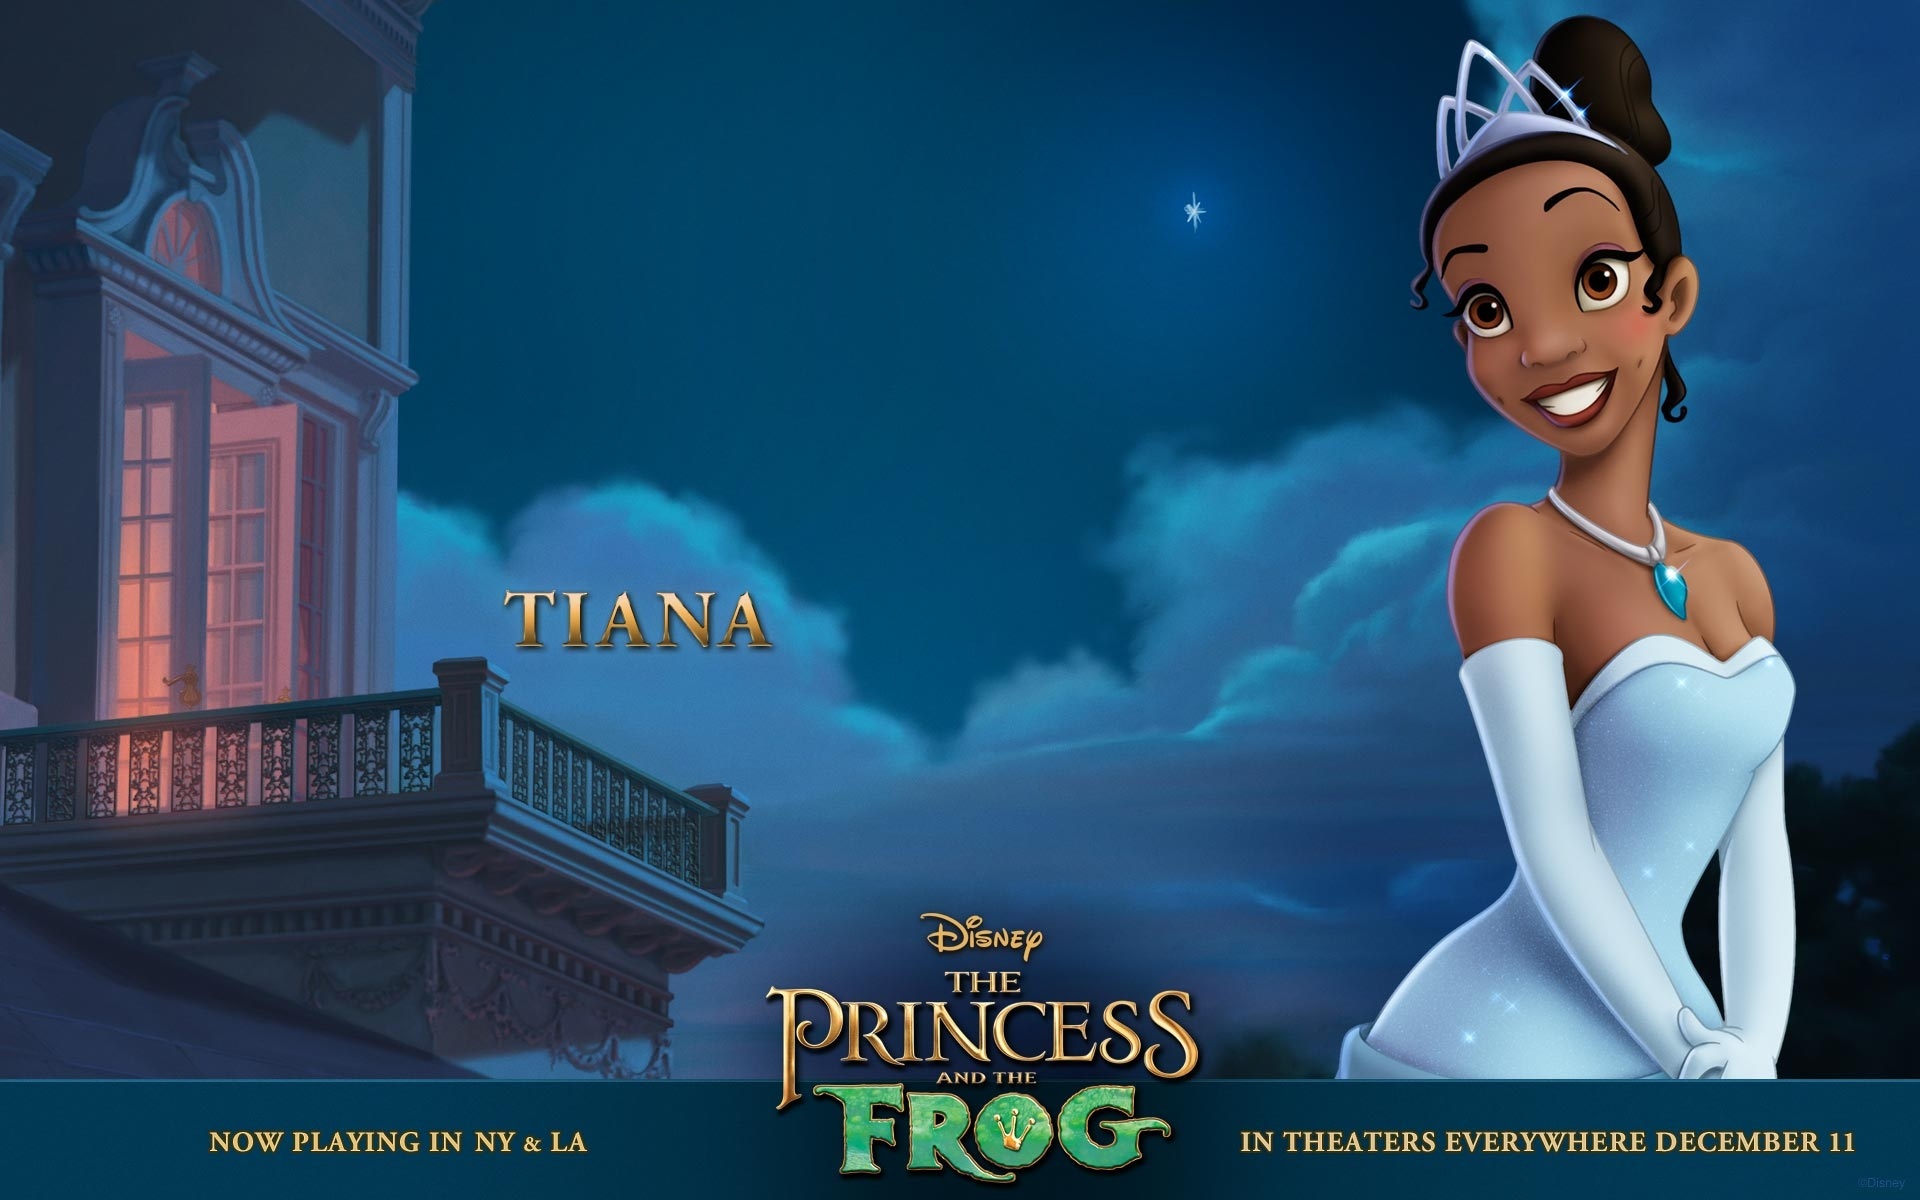 "The Princess and the Frog: Tiana" desktop wallpaper (1920 x 1200 pixels)